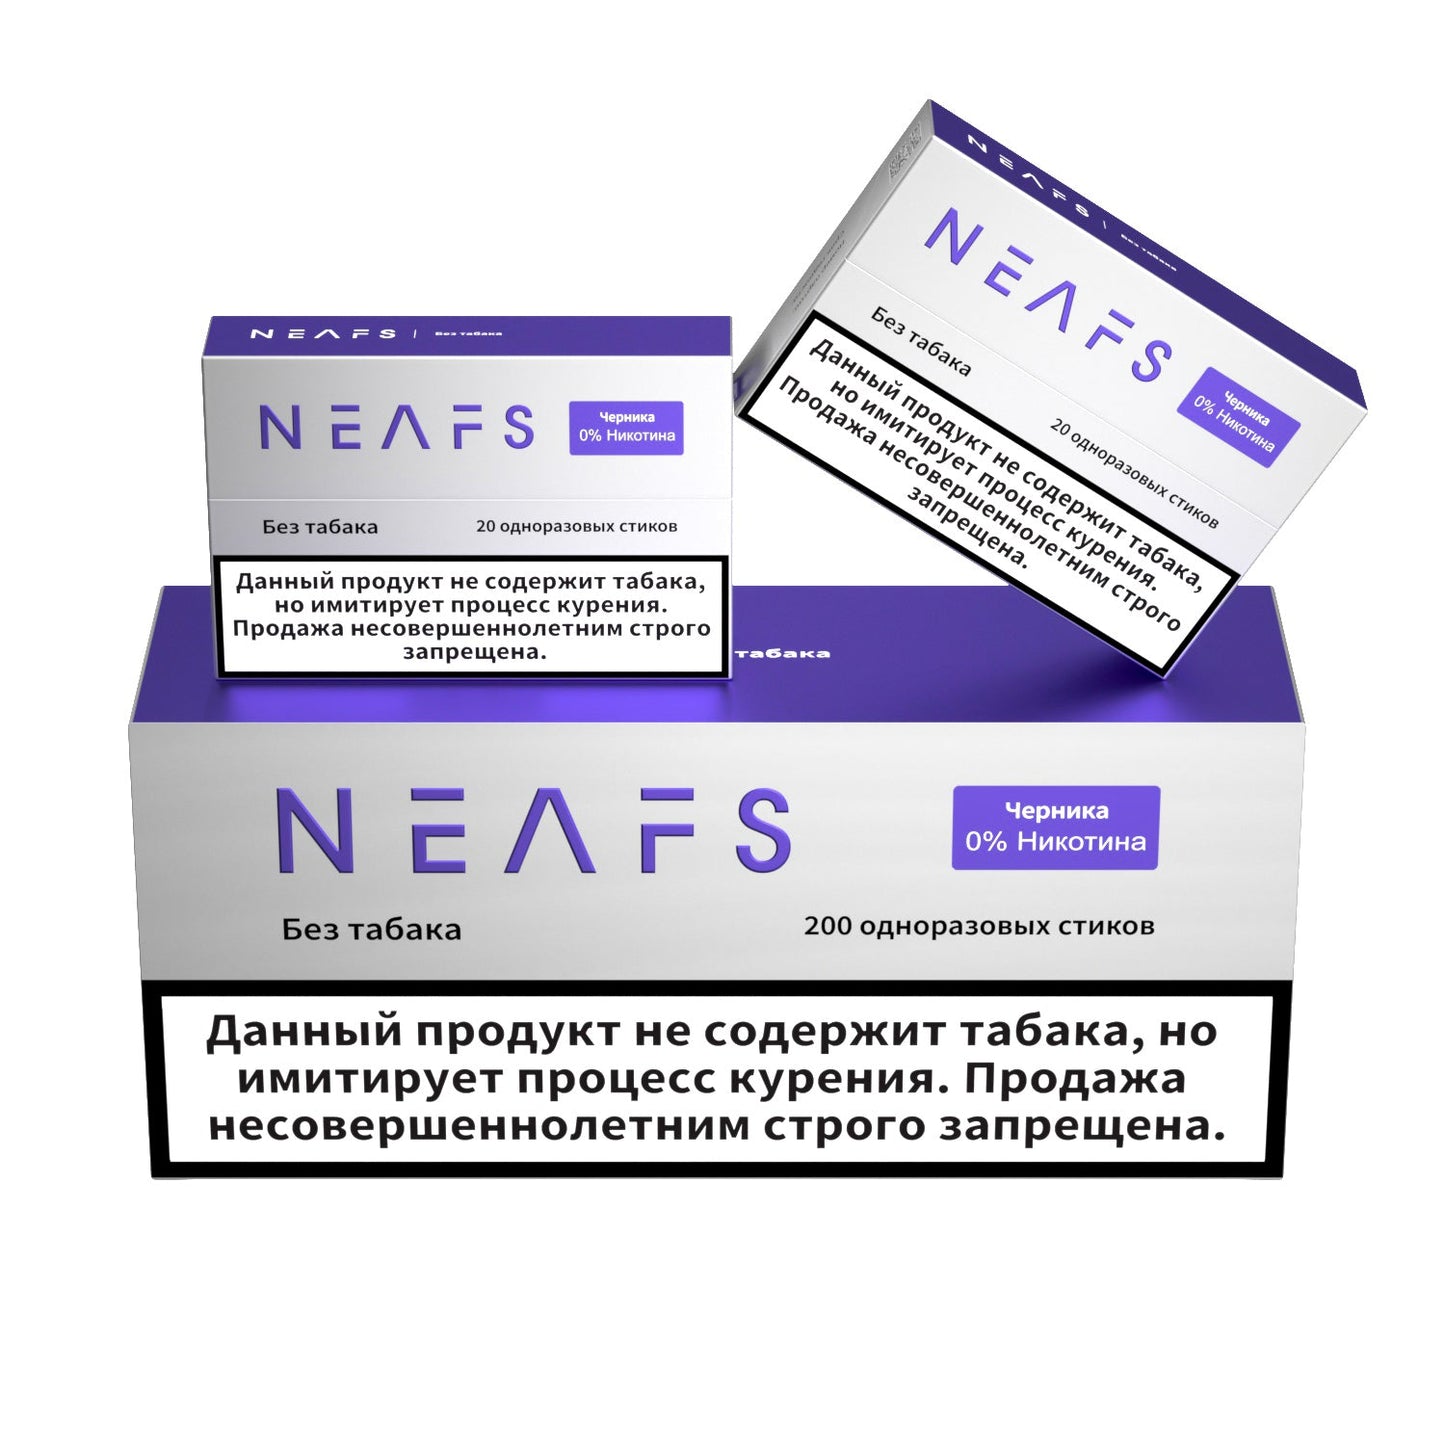 Безникотиновые стики NEAFS Черника 0% – 200 стиков